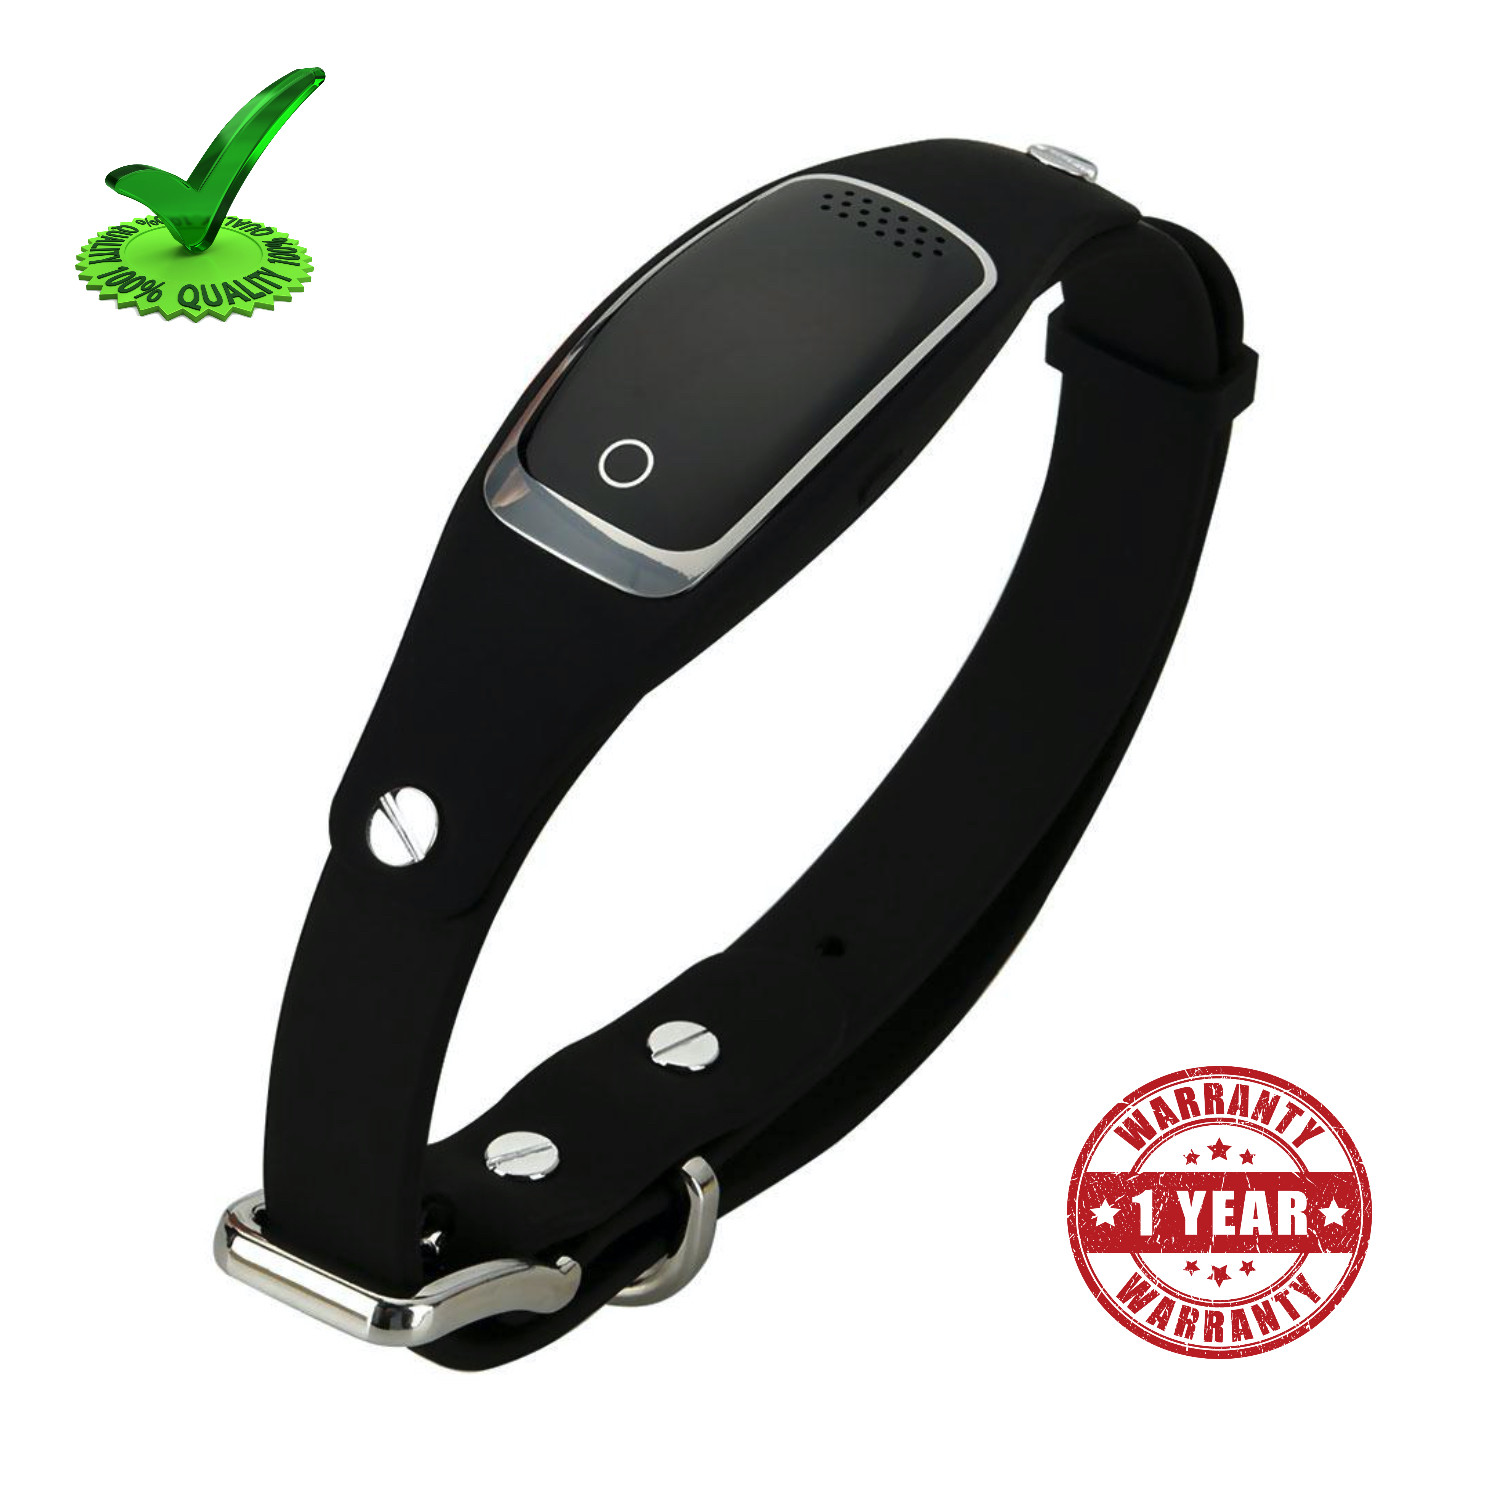 Gps Pet Tracker Collar Belt